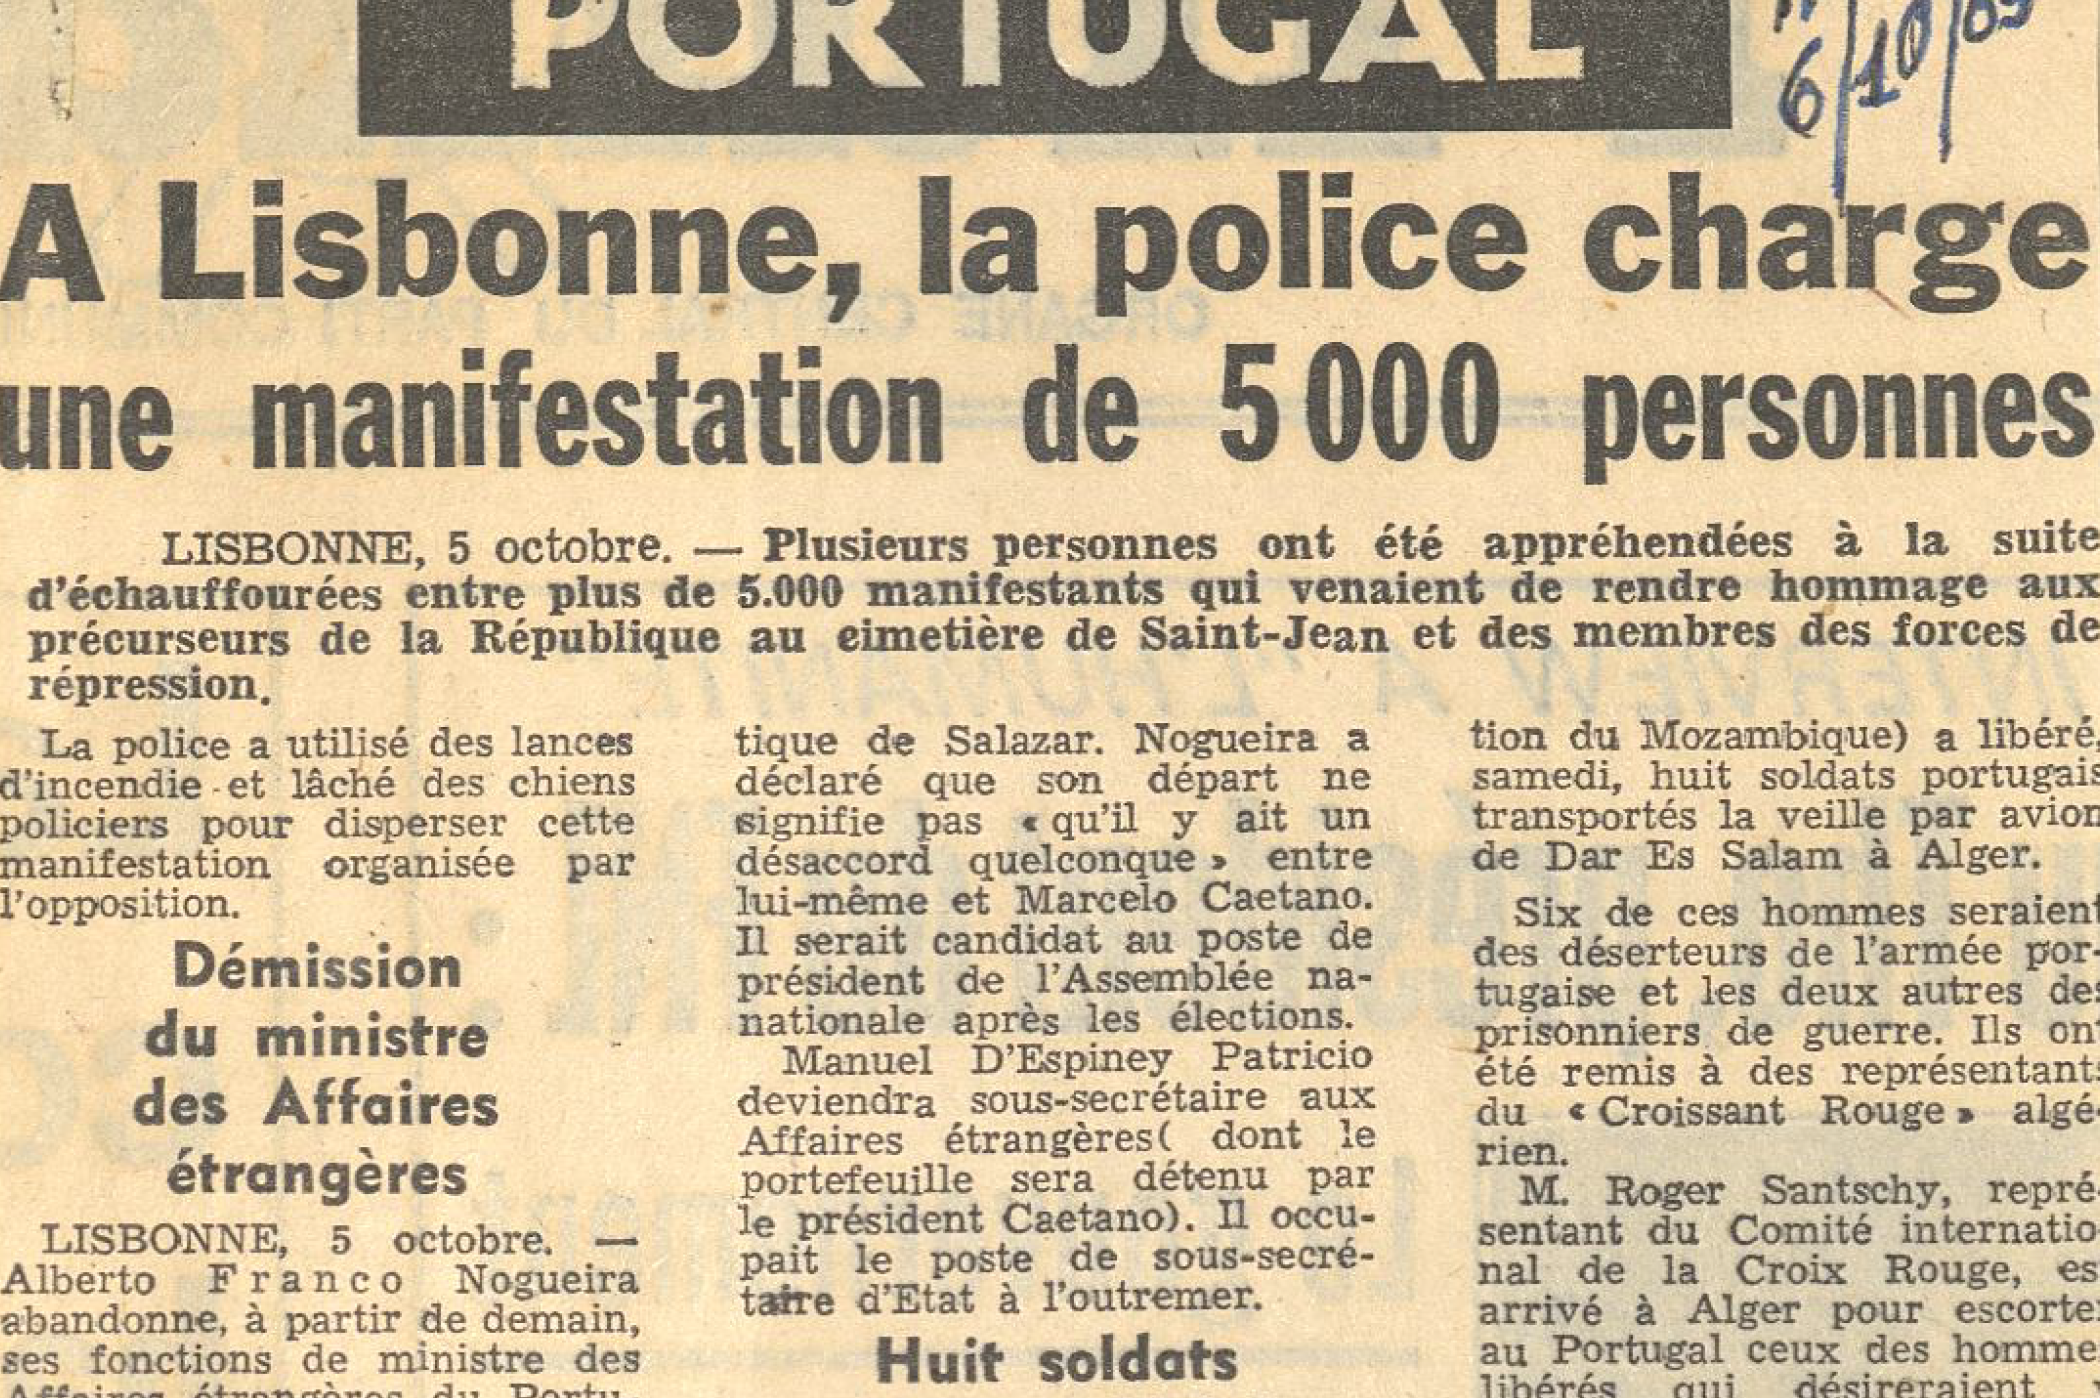 "A Lisbonne, la police charge une Manifestation de 5000 personnes"